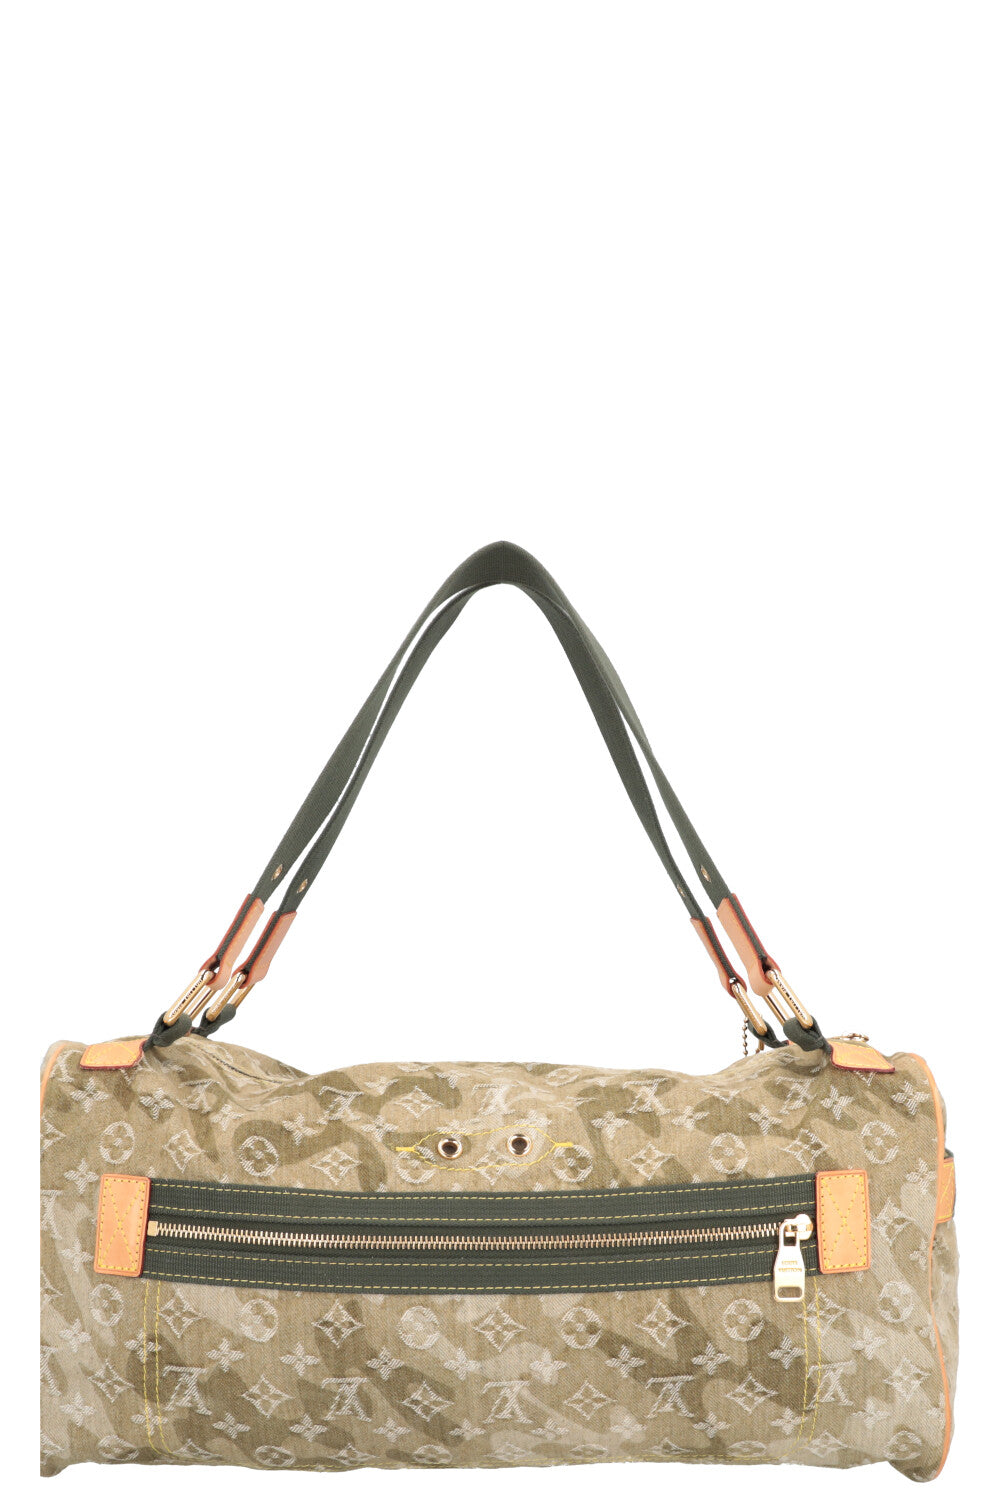 New LV transparent handbag – ZAK BAGS ©️